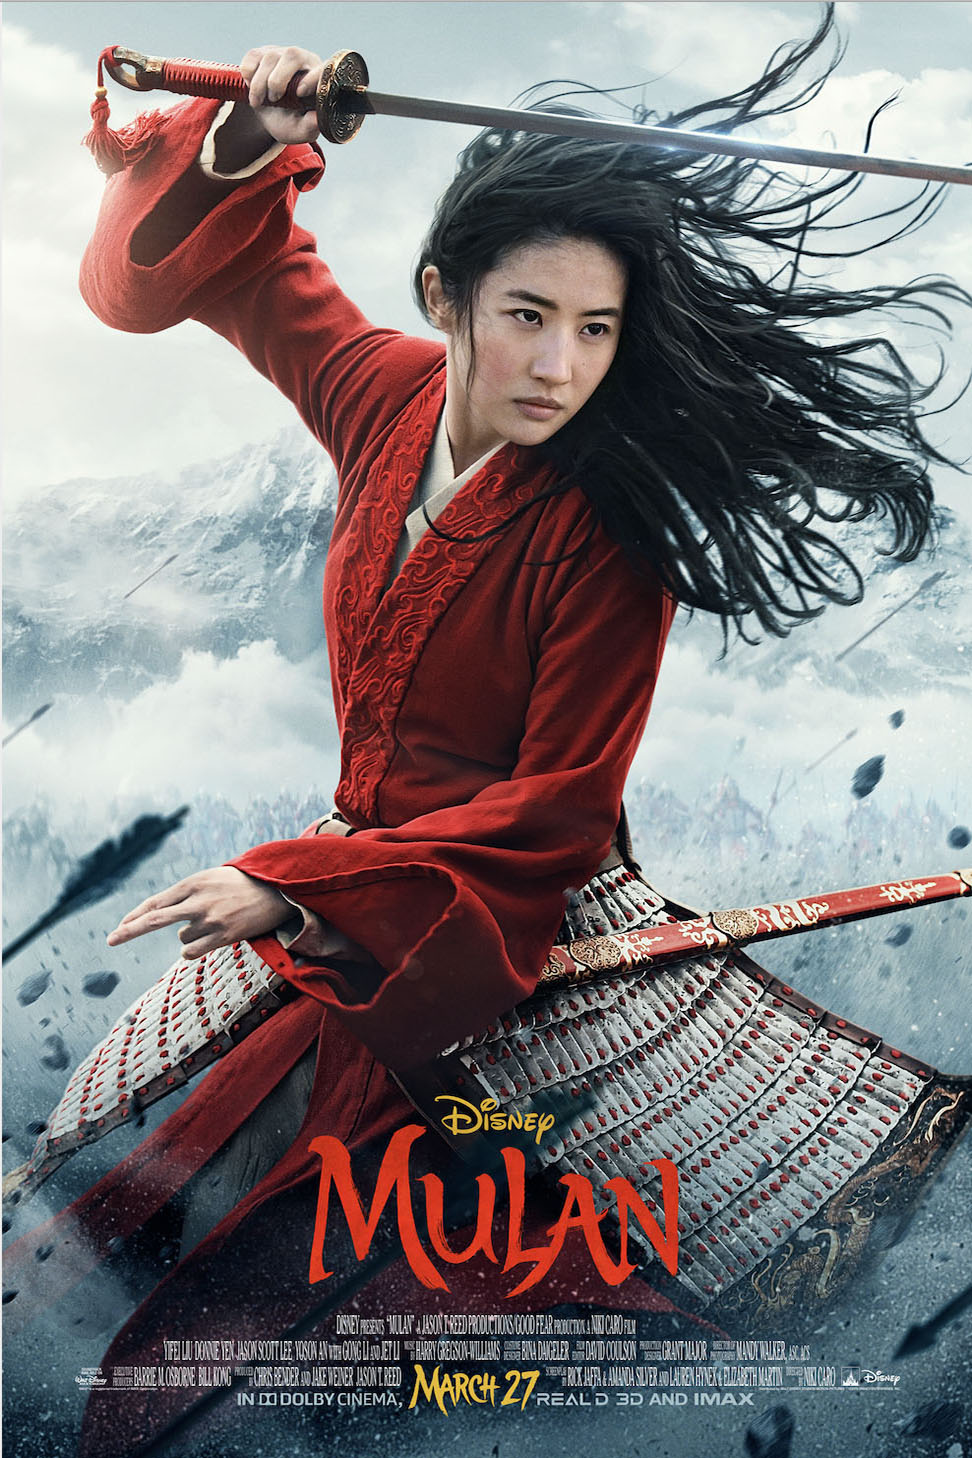 Still of Mulan